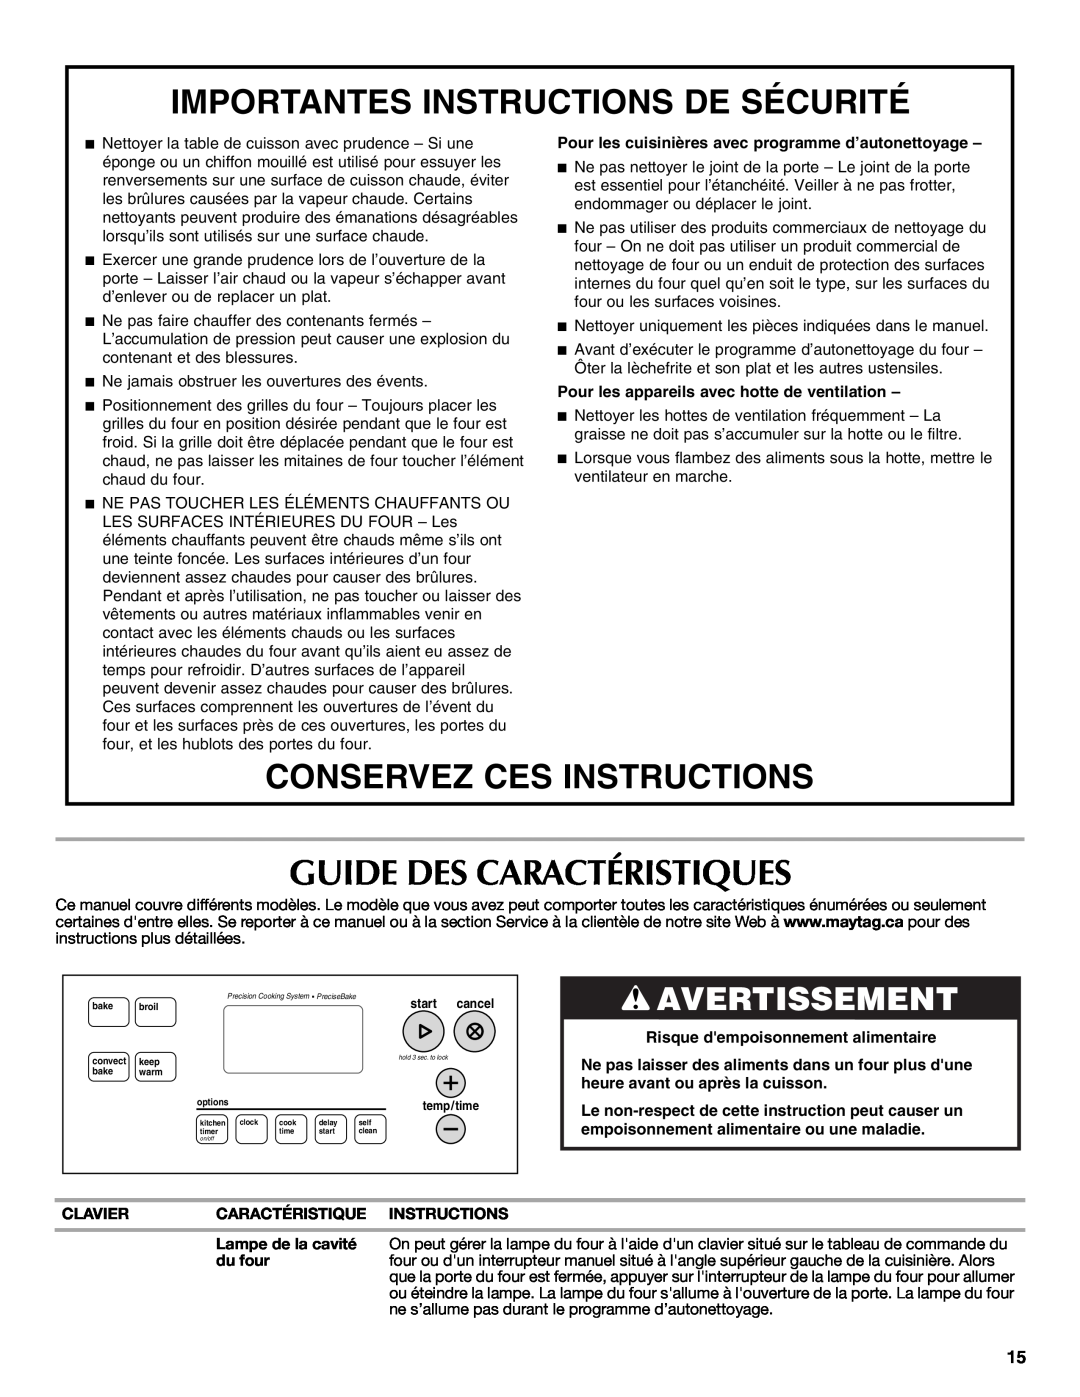 Whirlpool W10234647A warranty Guide Des Caractéristiques, Importantes Instructions De Sécurité, Conservez Ces Instructions 